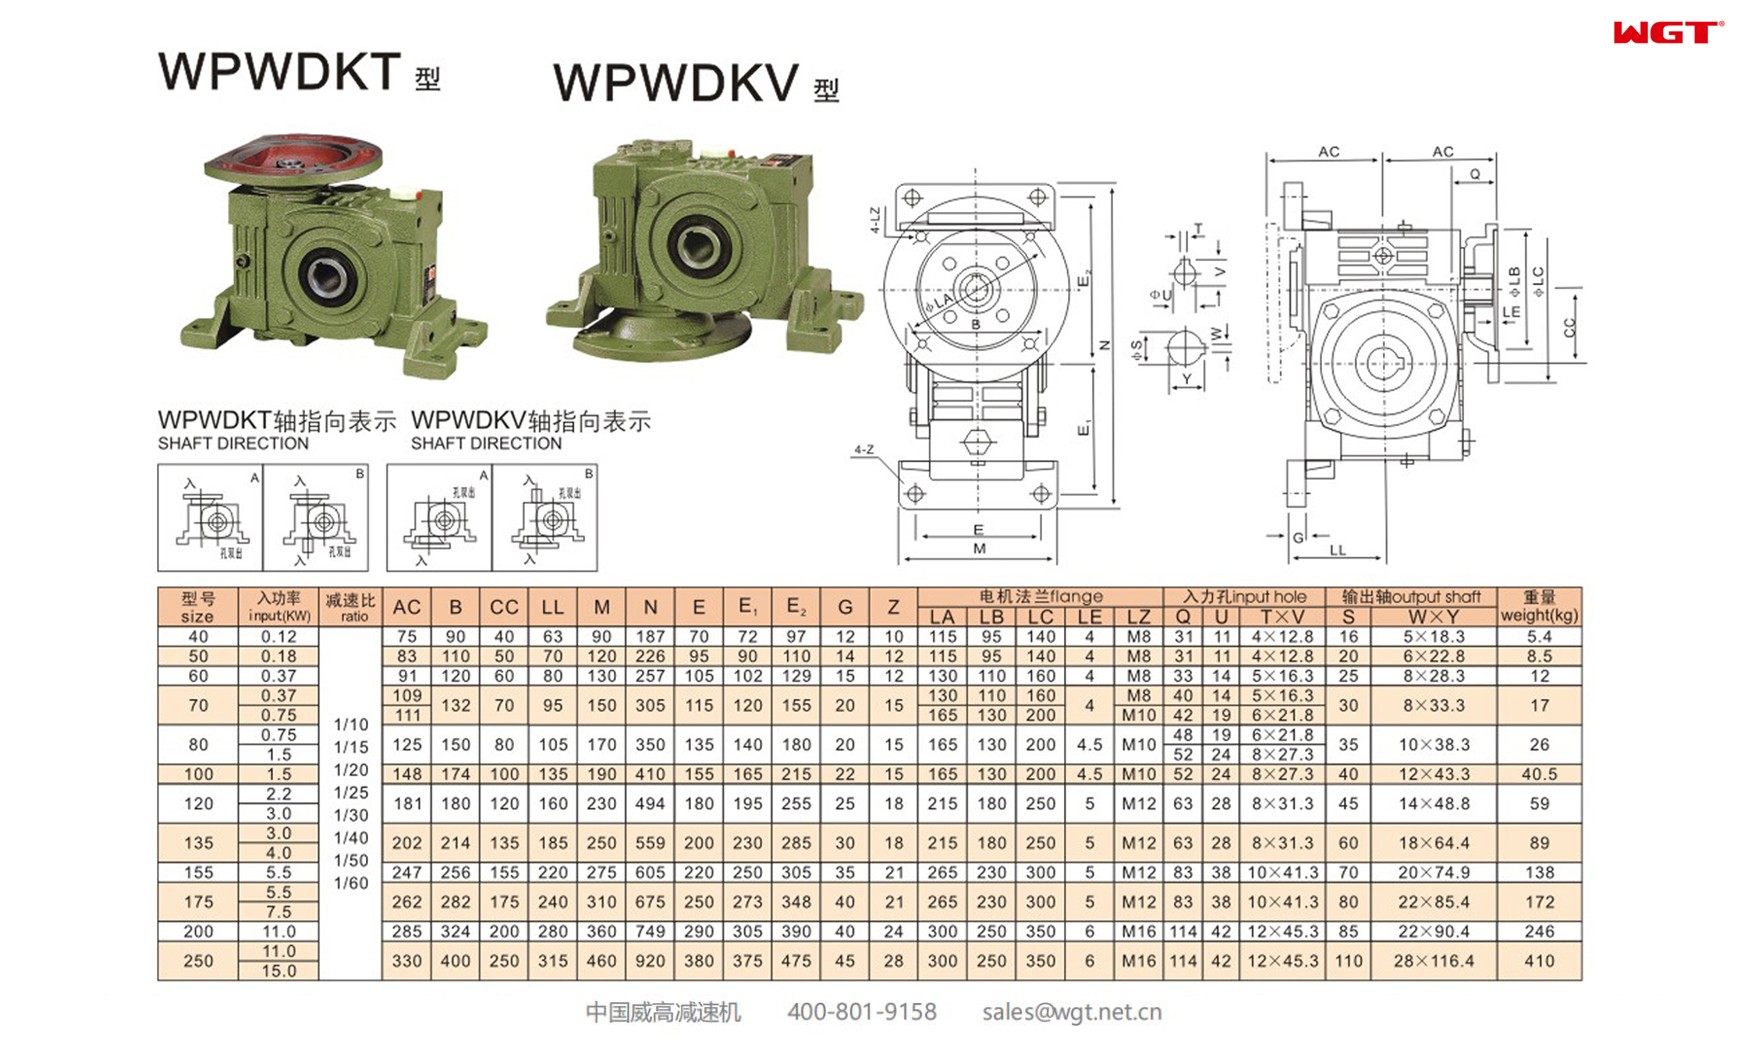 WPWDKV175 worm gear reducer universal speed reducer